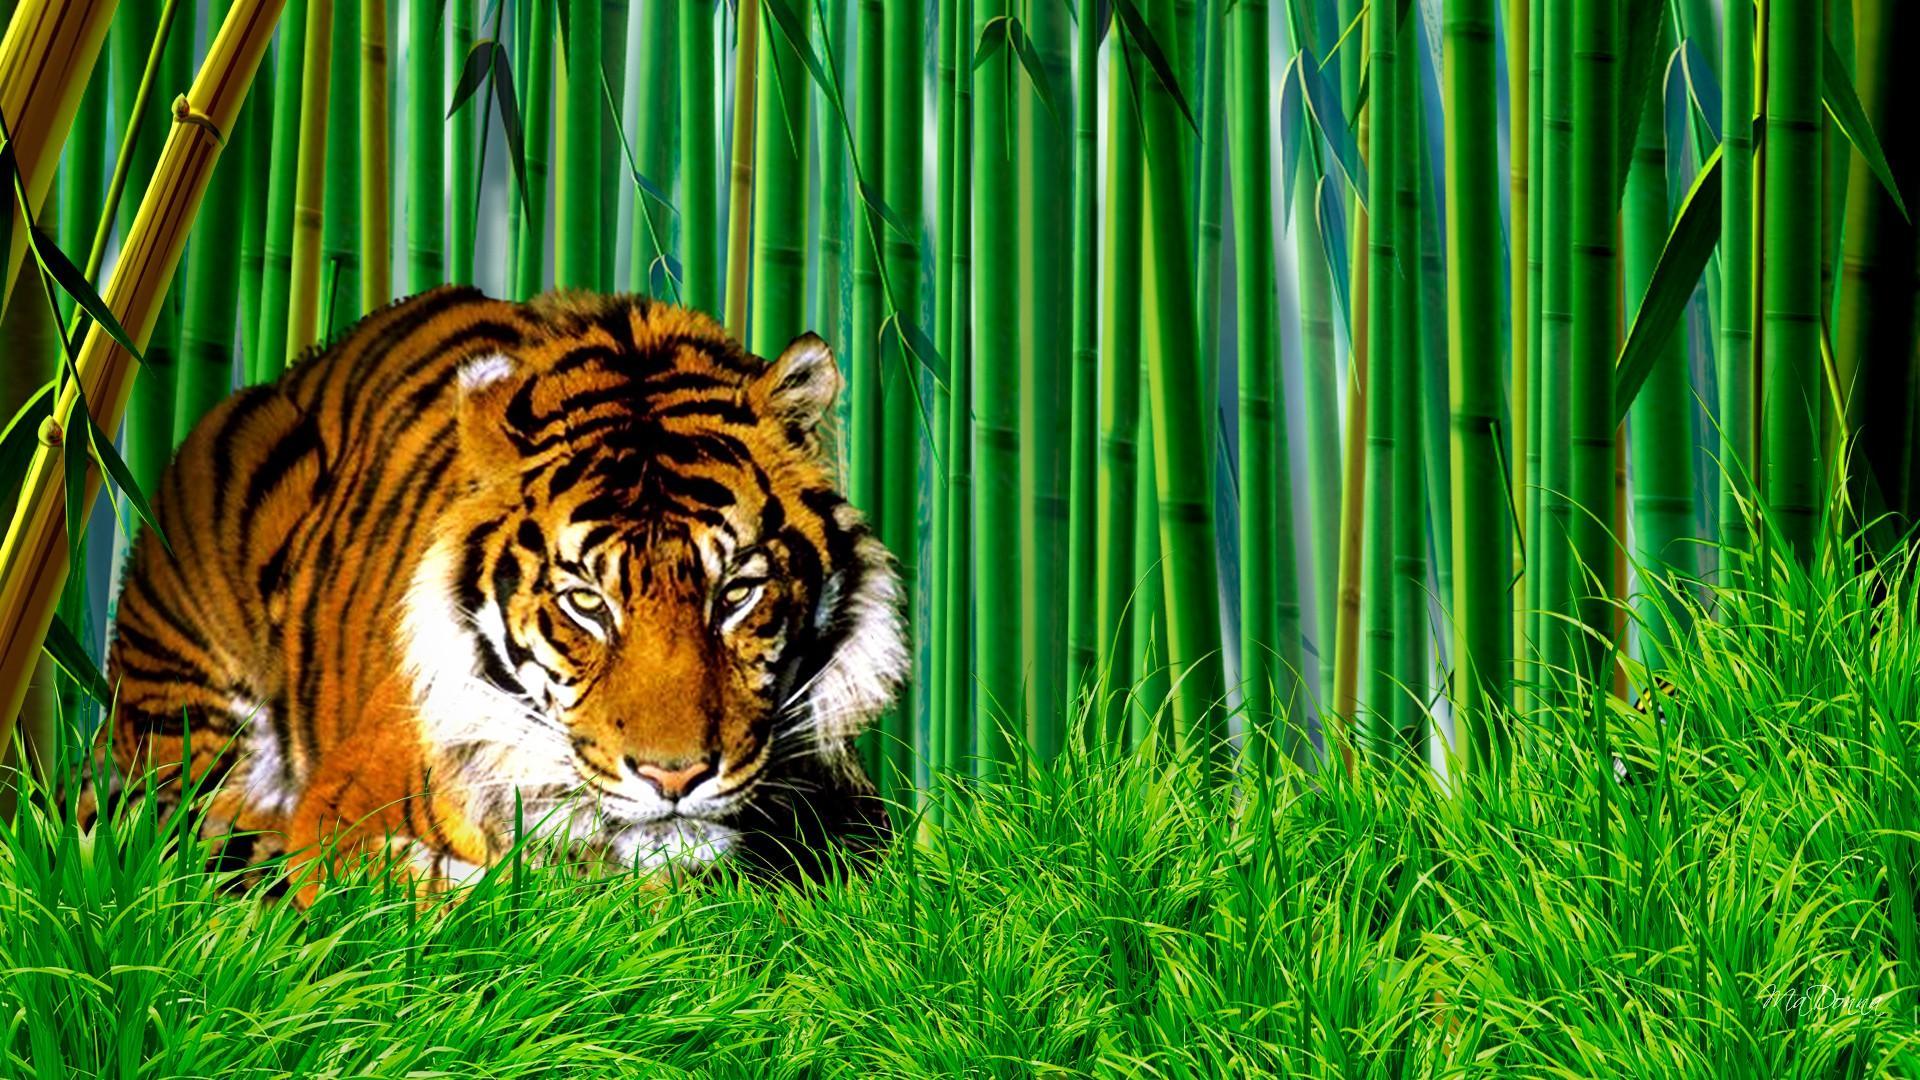 download wallpaper harimau bergerak,tiger,wildlife,vertebrate,bengal tiger,siberian tiger